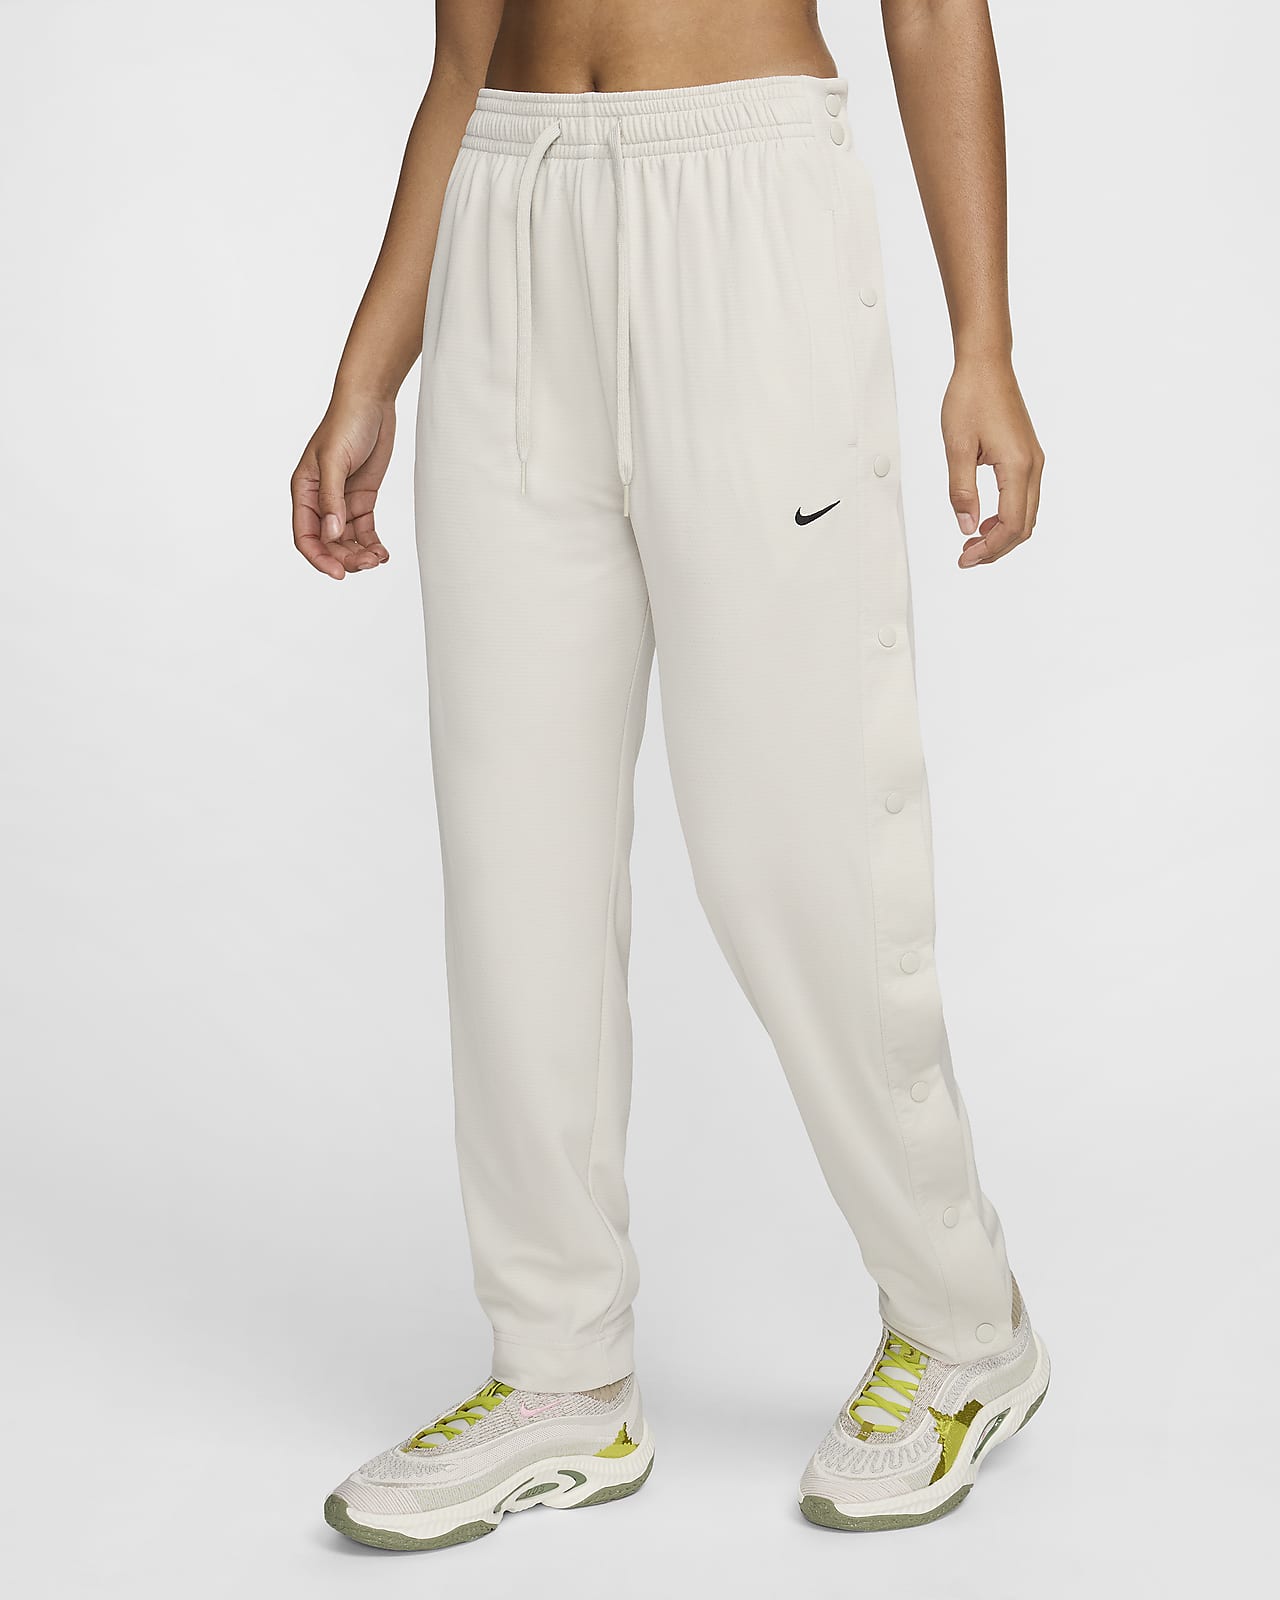 Nike Women's Dri-FIT Tear-Away Basketball Pants